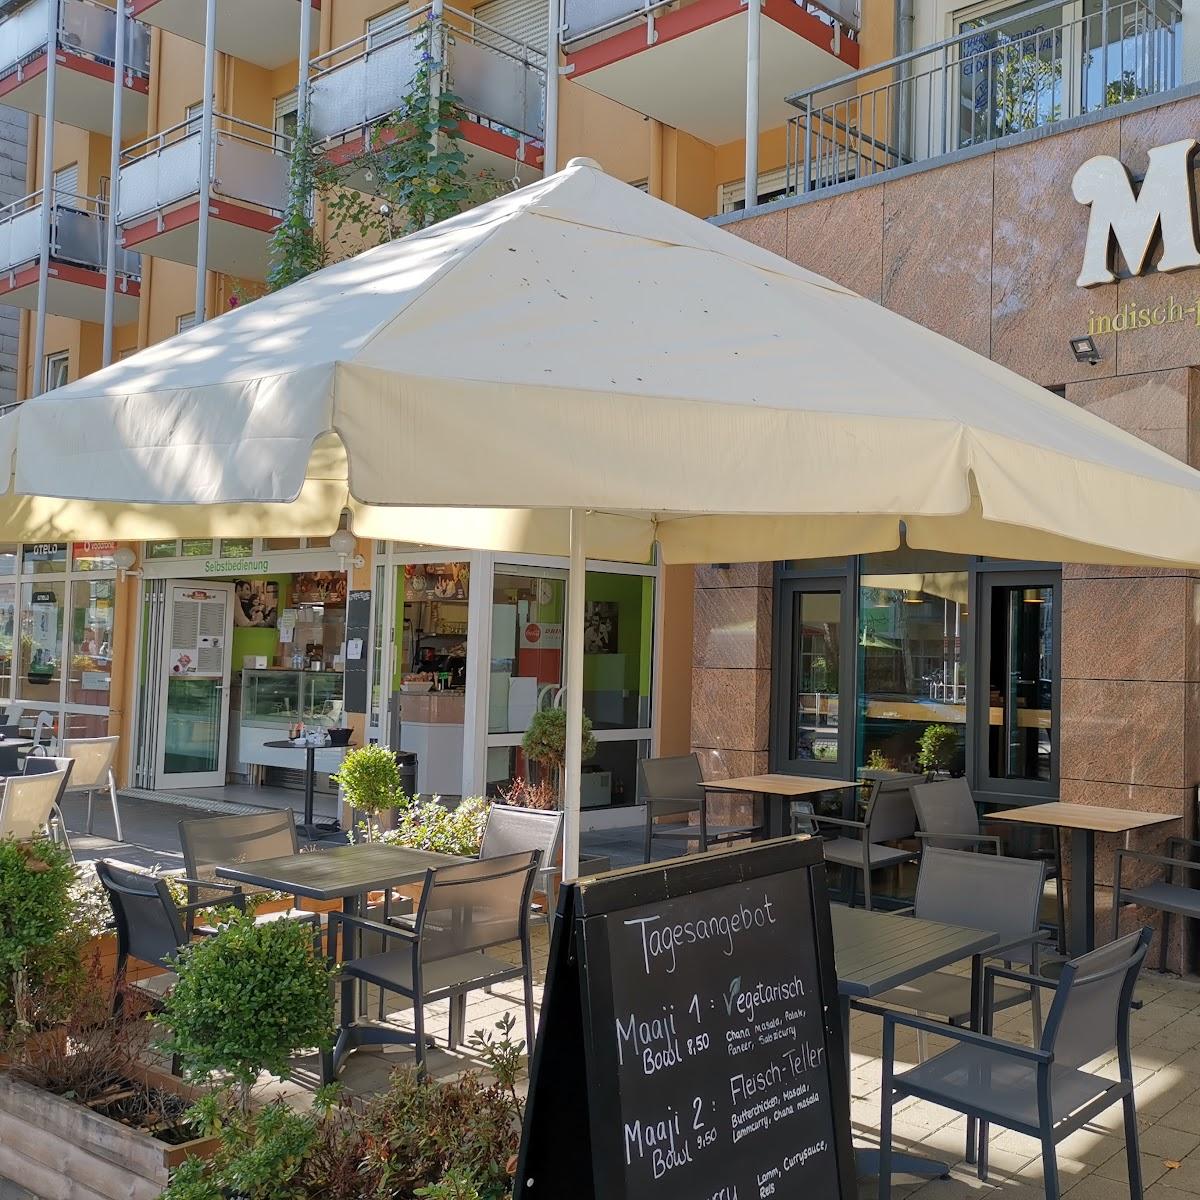 Restaurant "Maaji" in Freiburg im Breisgau